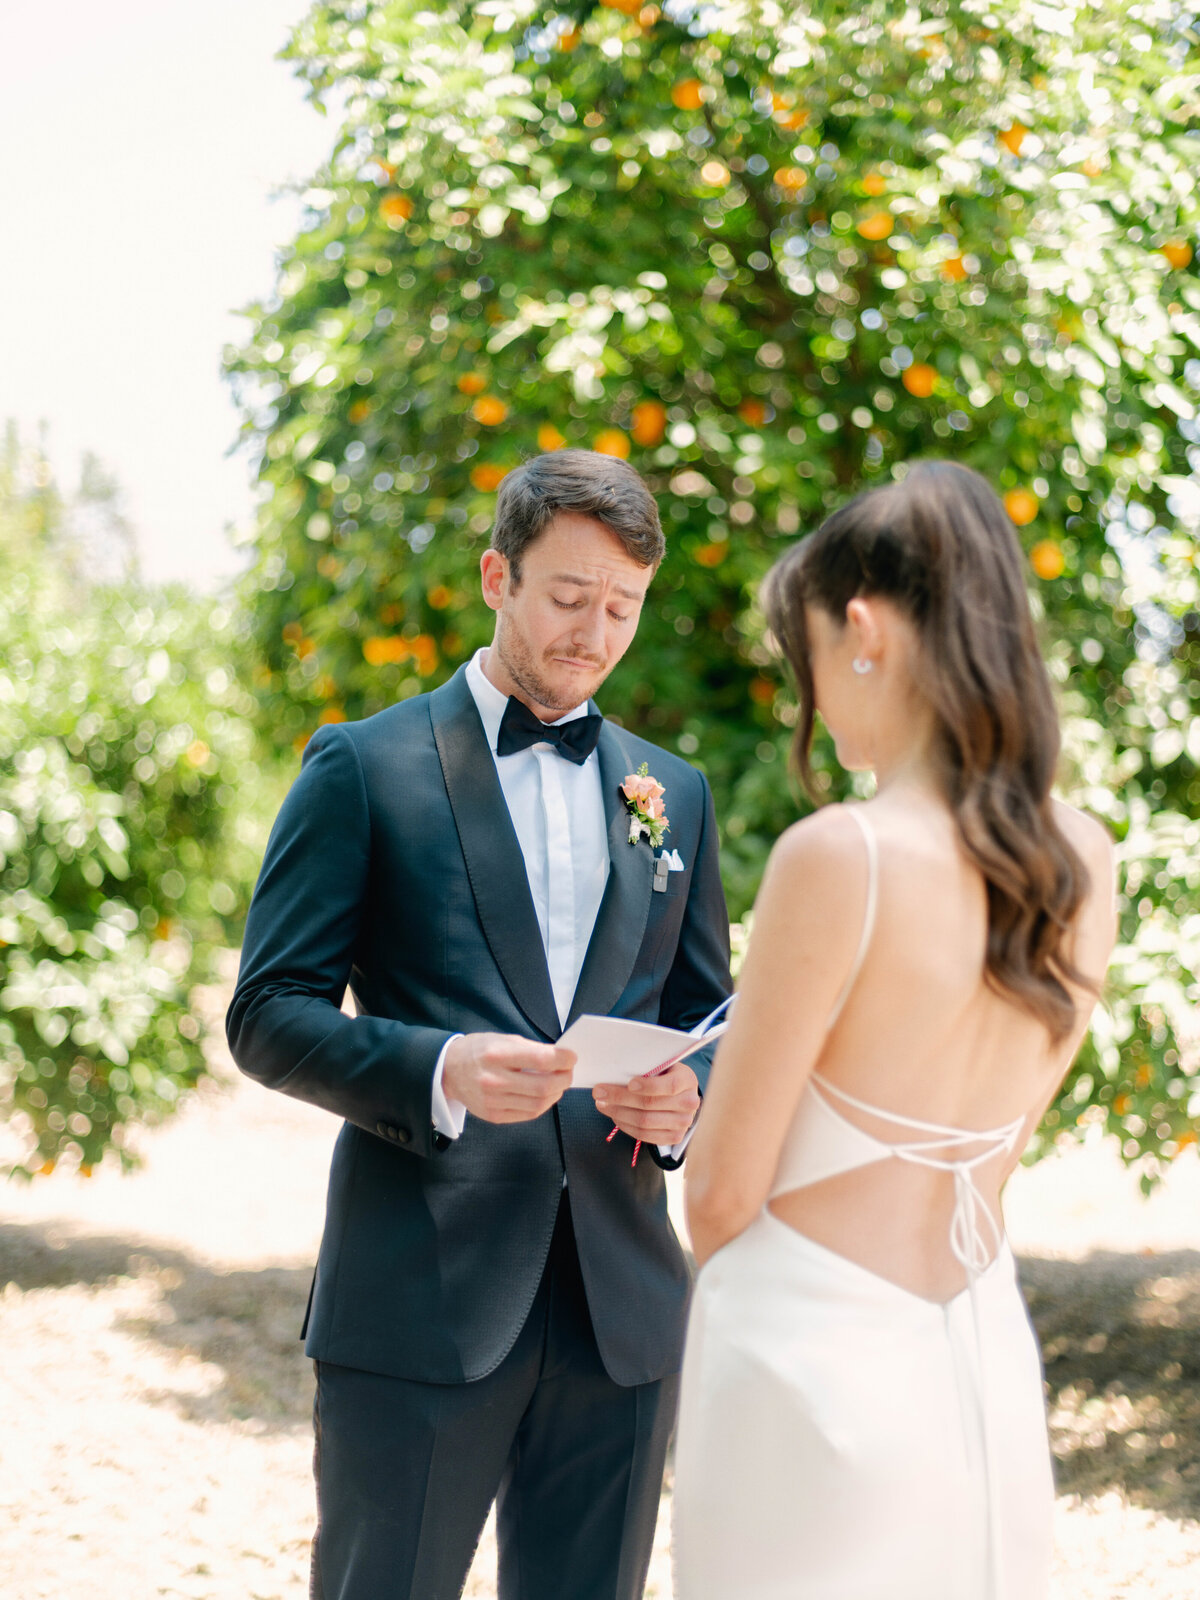 Private Estate Wedding in Ojai, California - 53